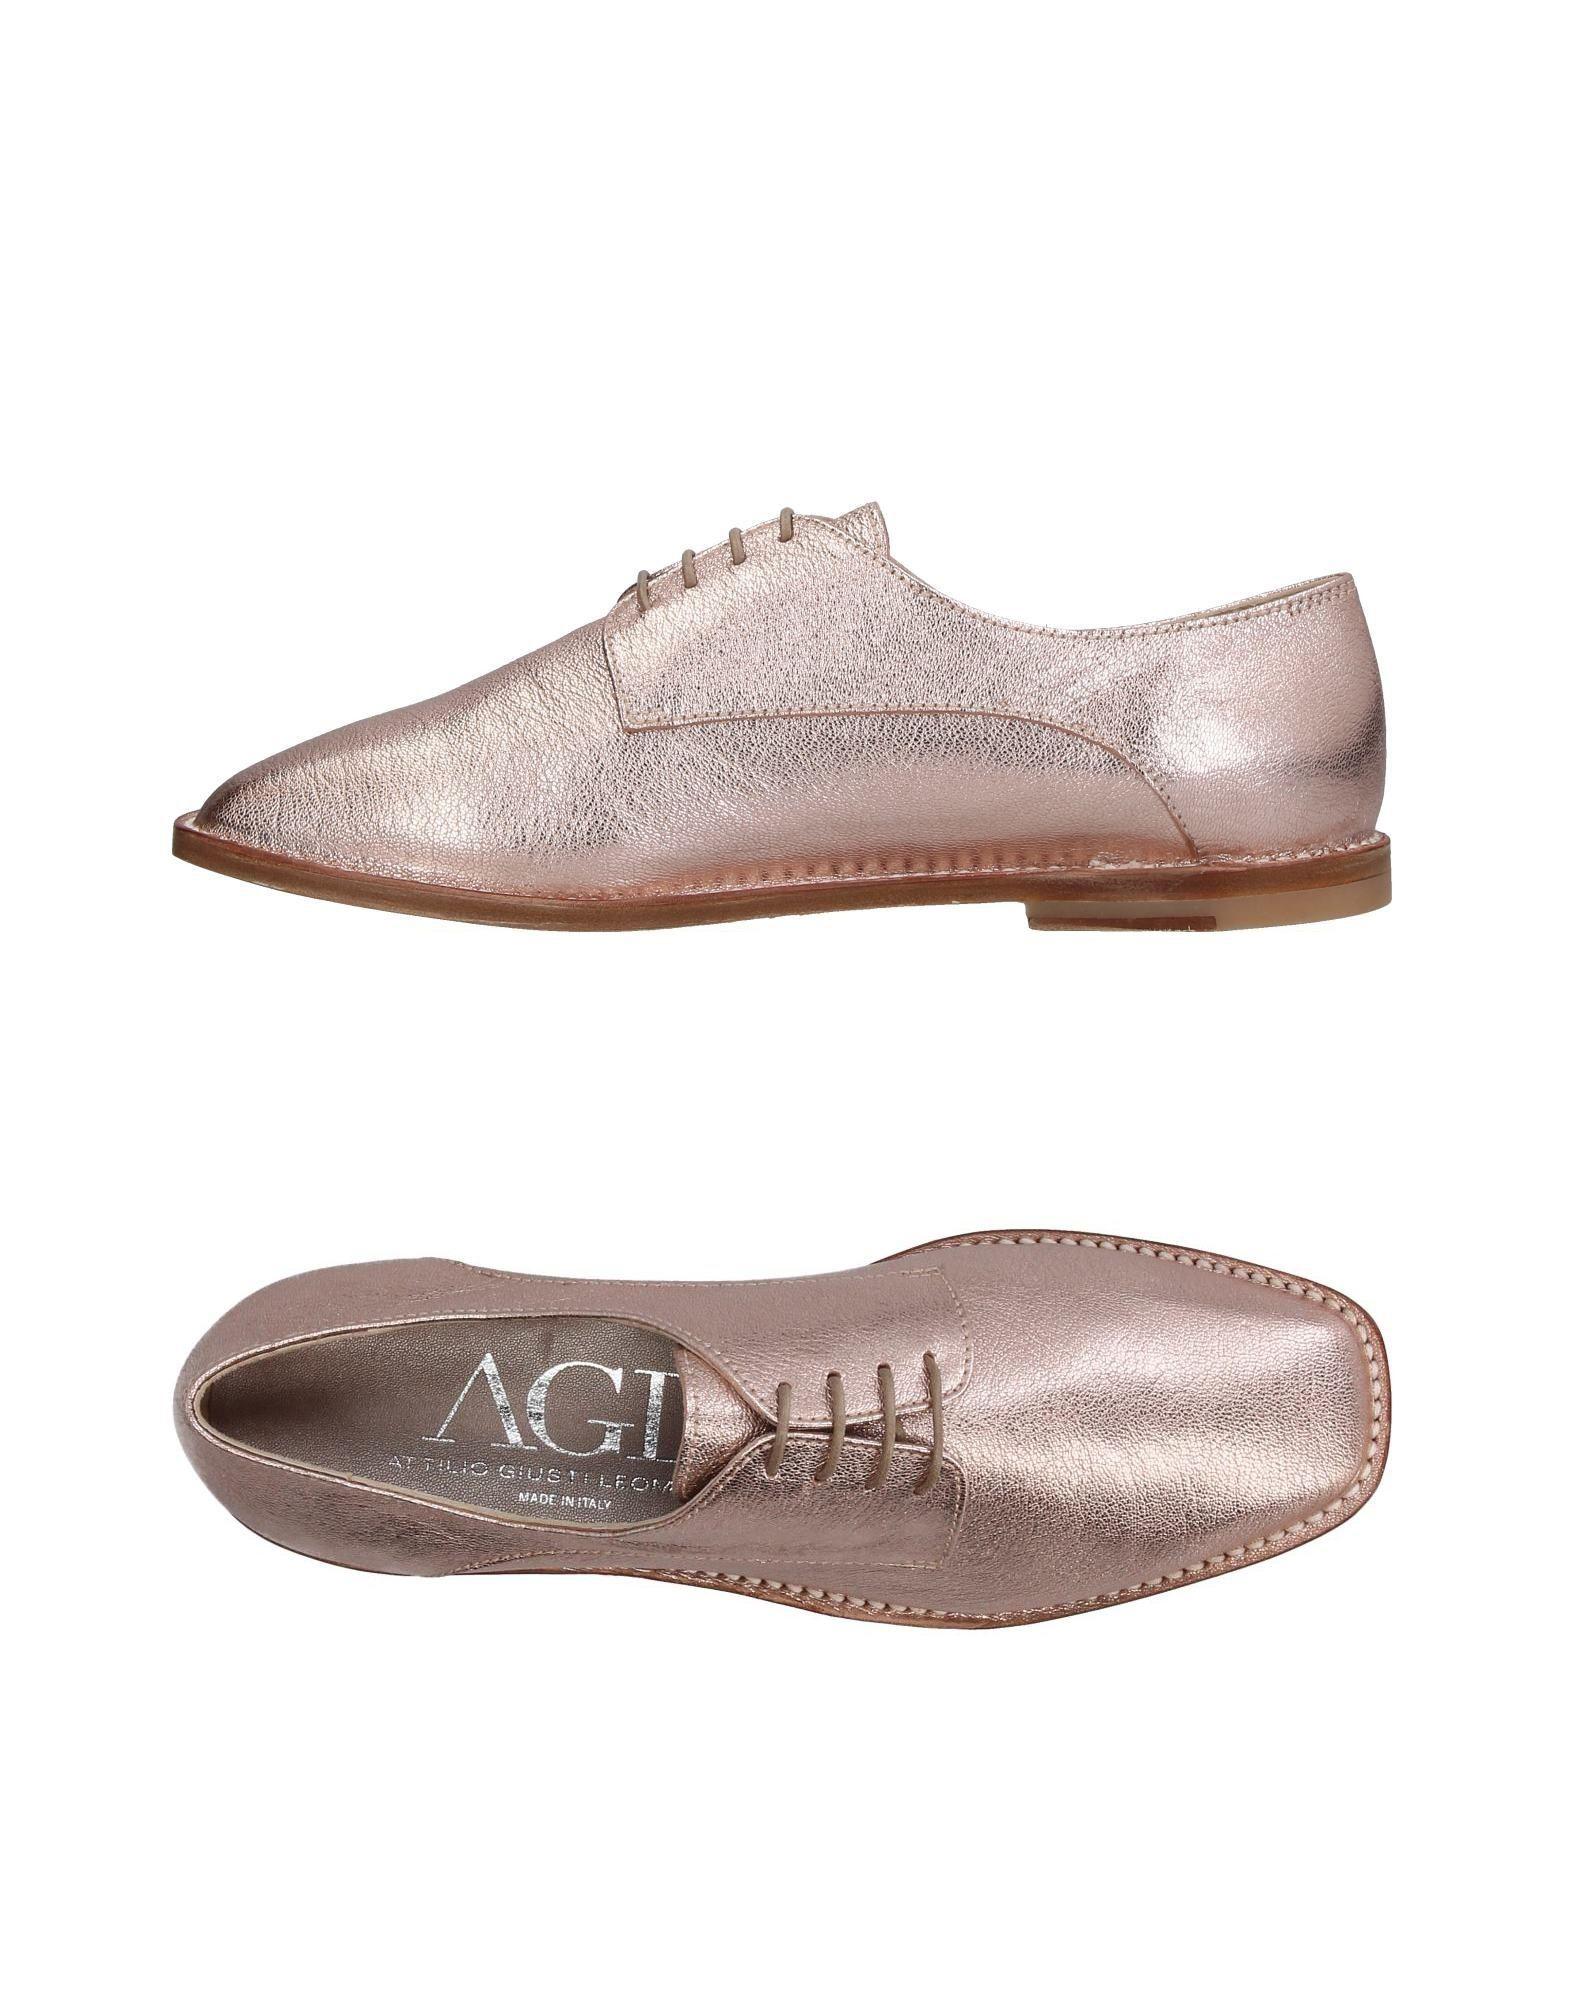 Agl Shoes | Italy Agl Attila Giusti Leombruni Leather 